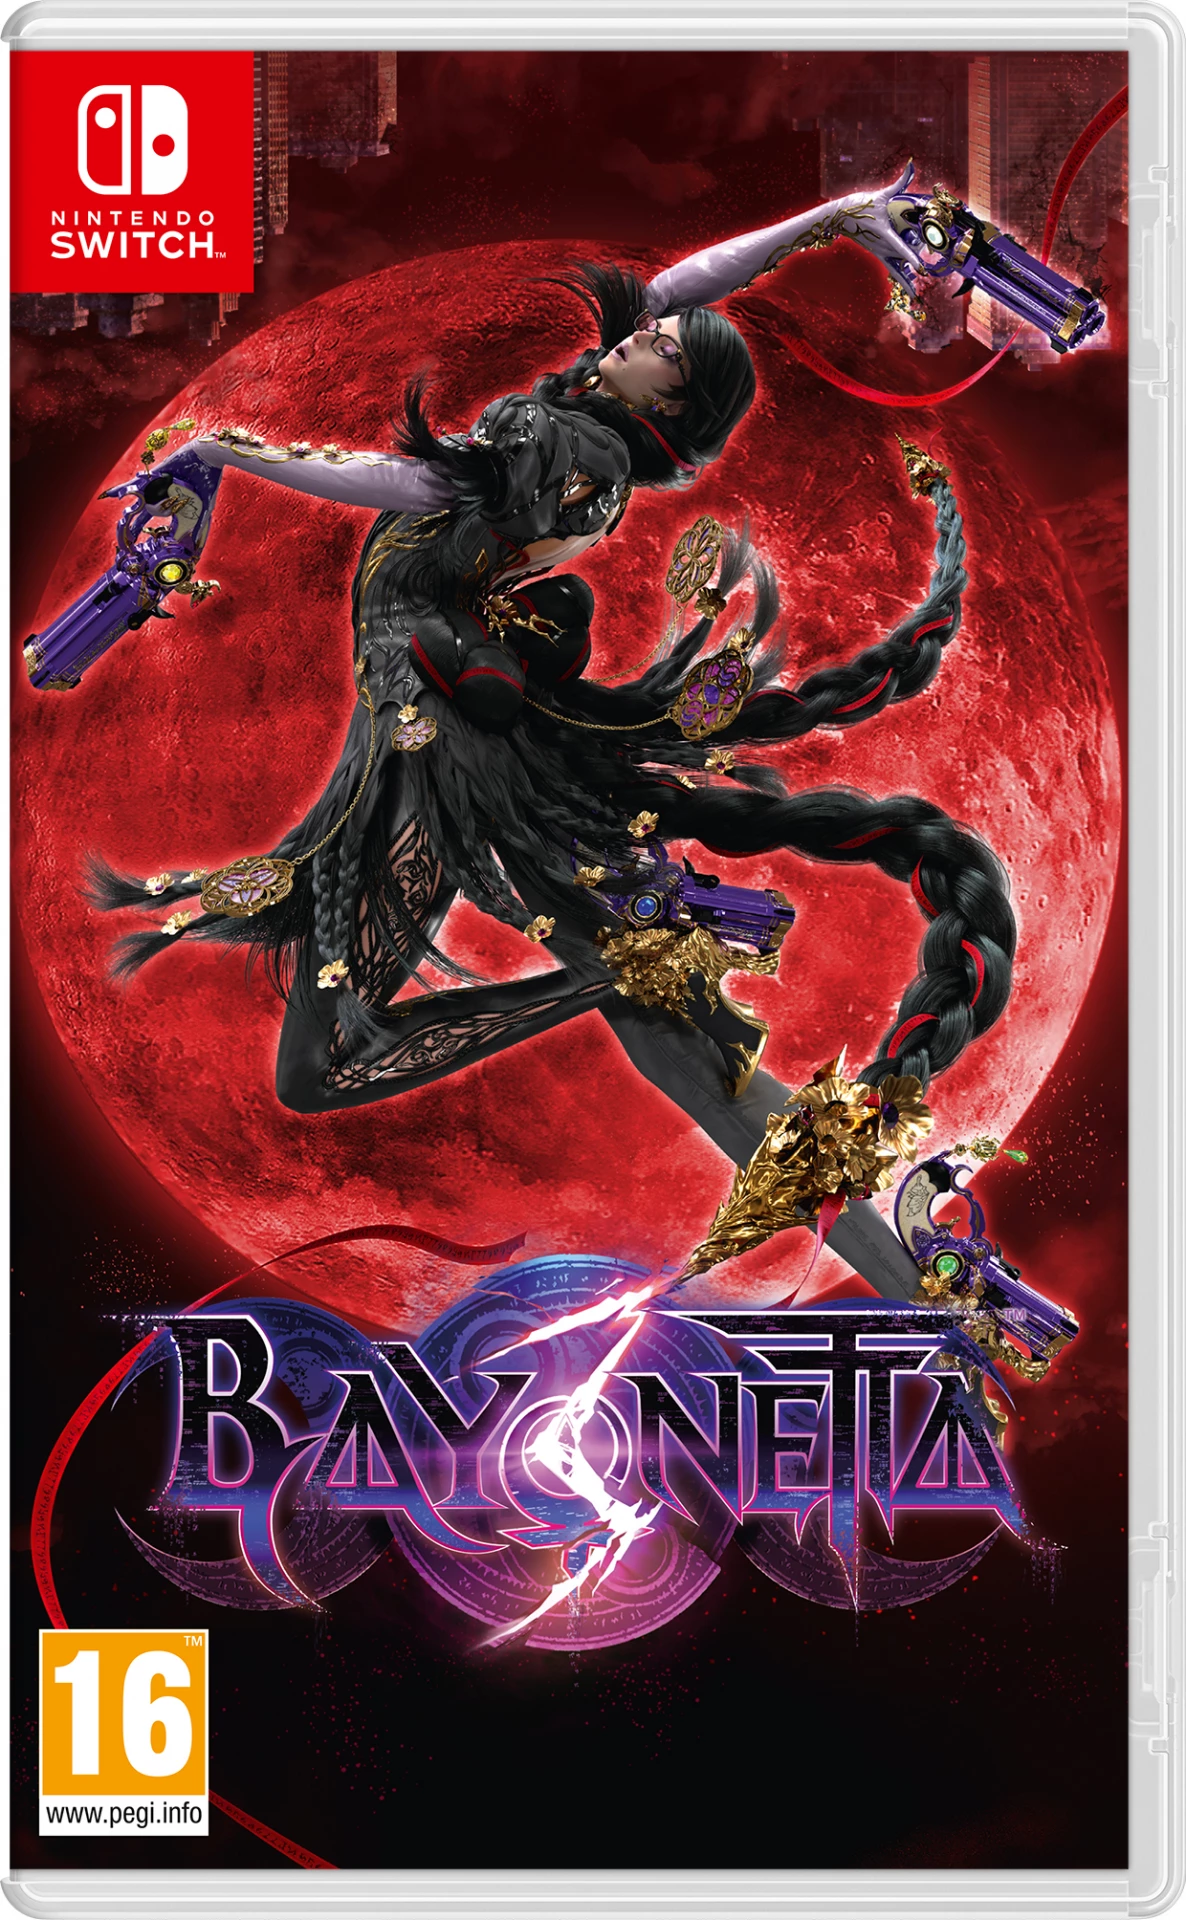 Bayonetta 3 voor de Nintendo Switch preorder plaatsen op nedgame.nl